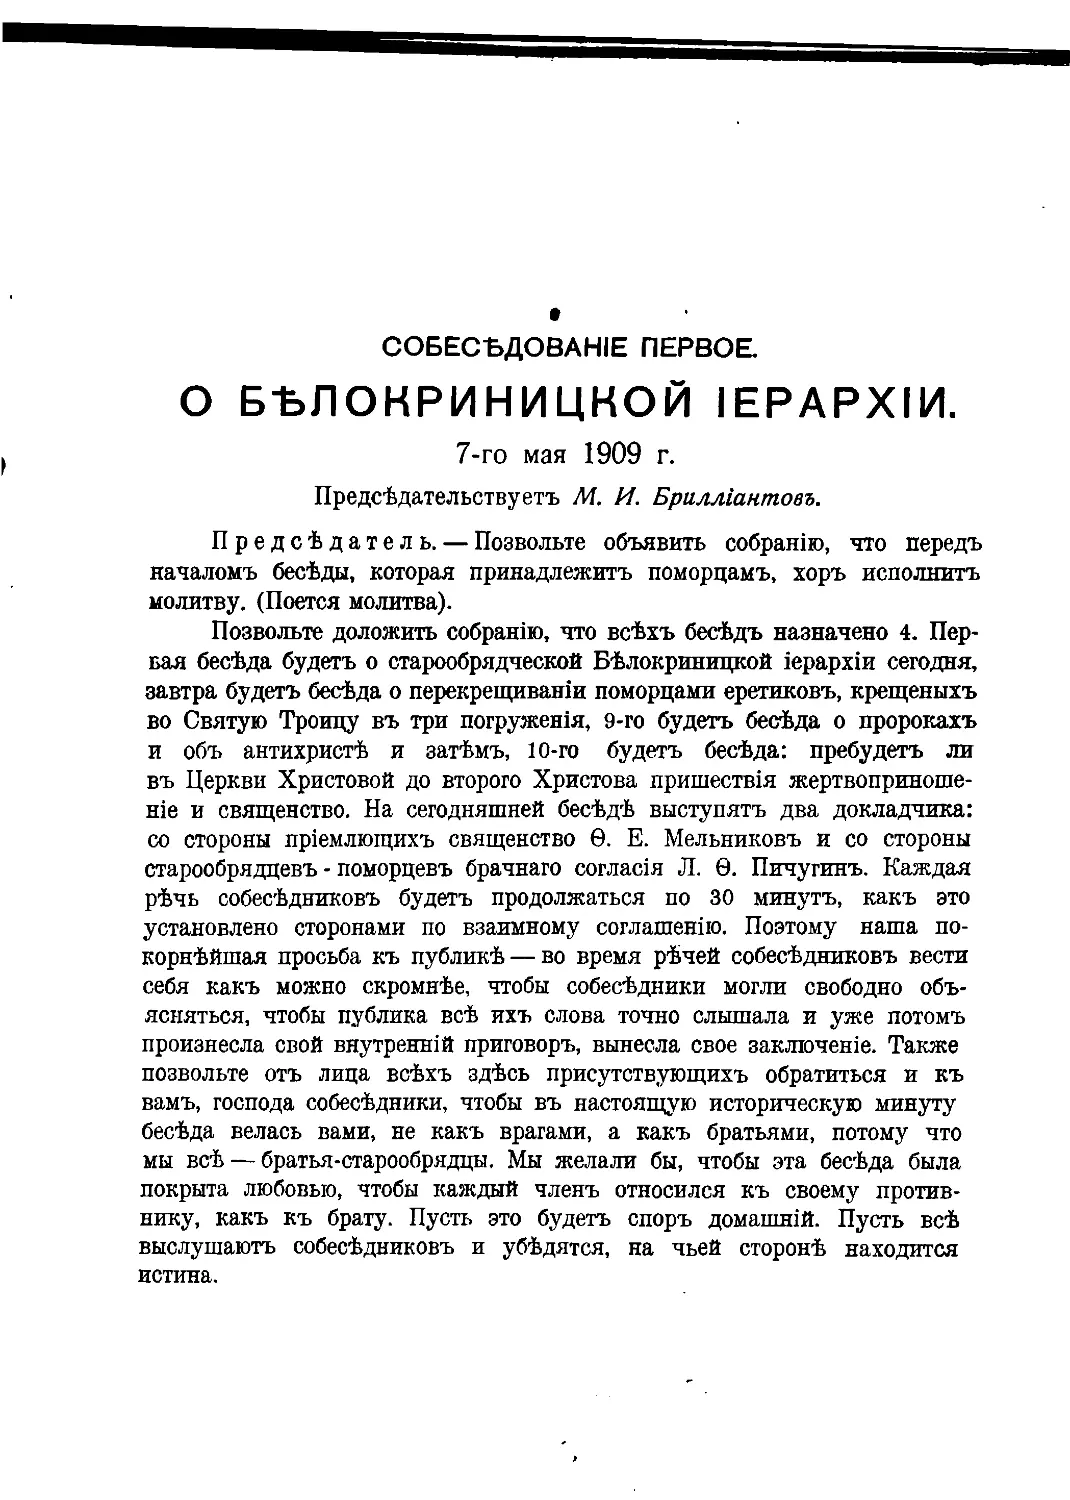 Собеседование первое о белокриницкой иерархии, 7-го мая 1909 г.